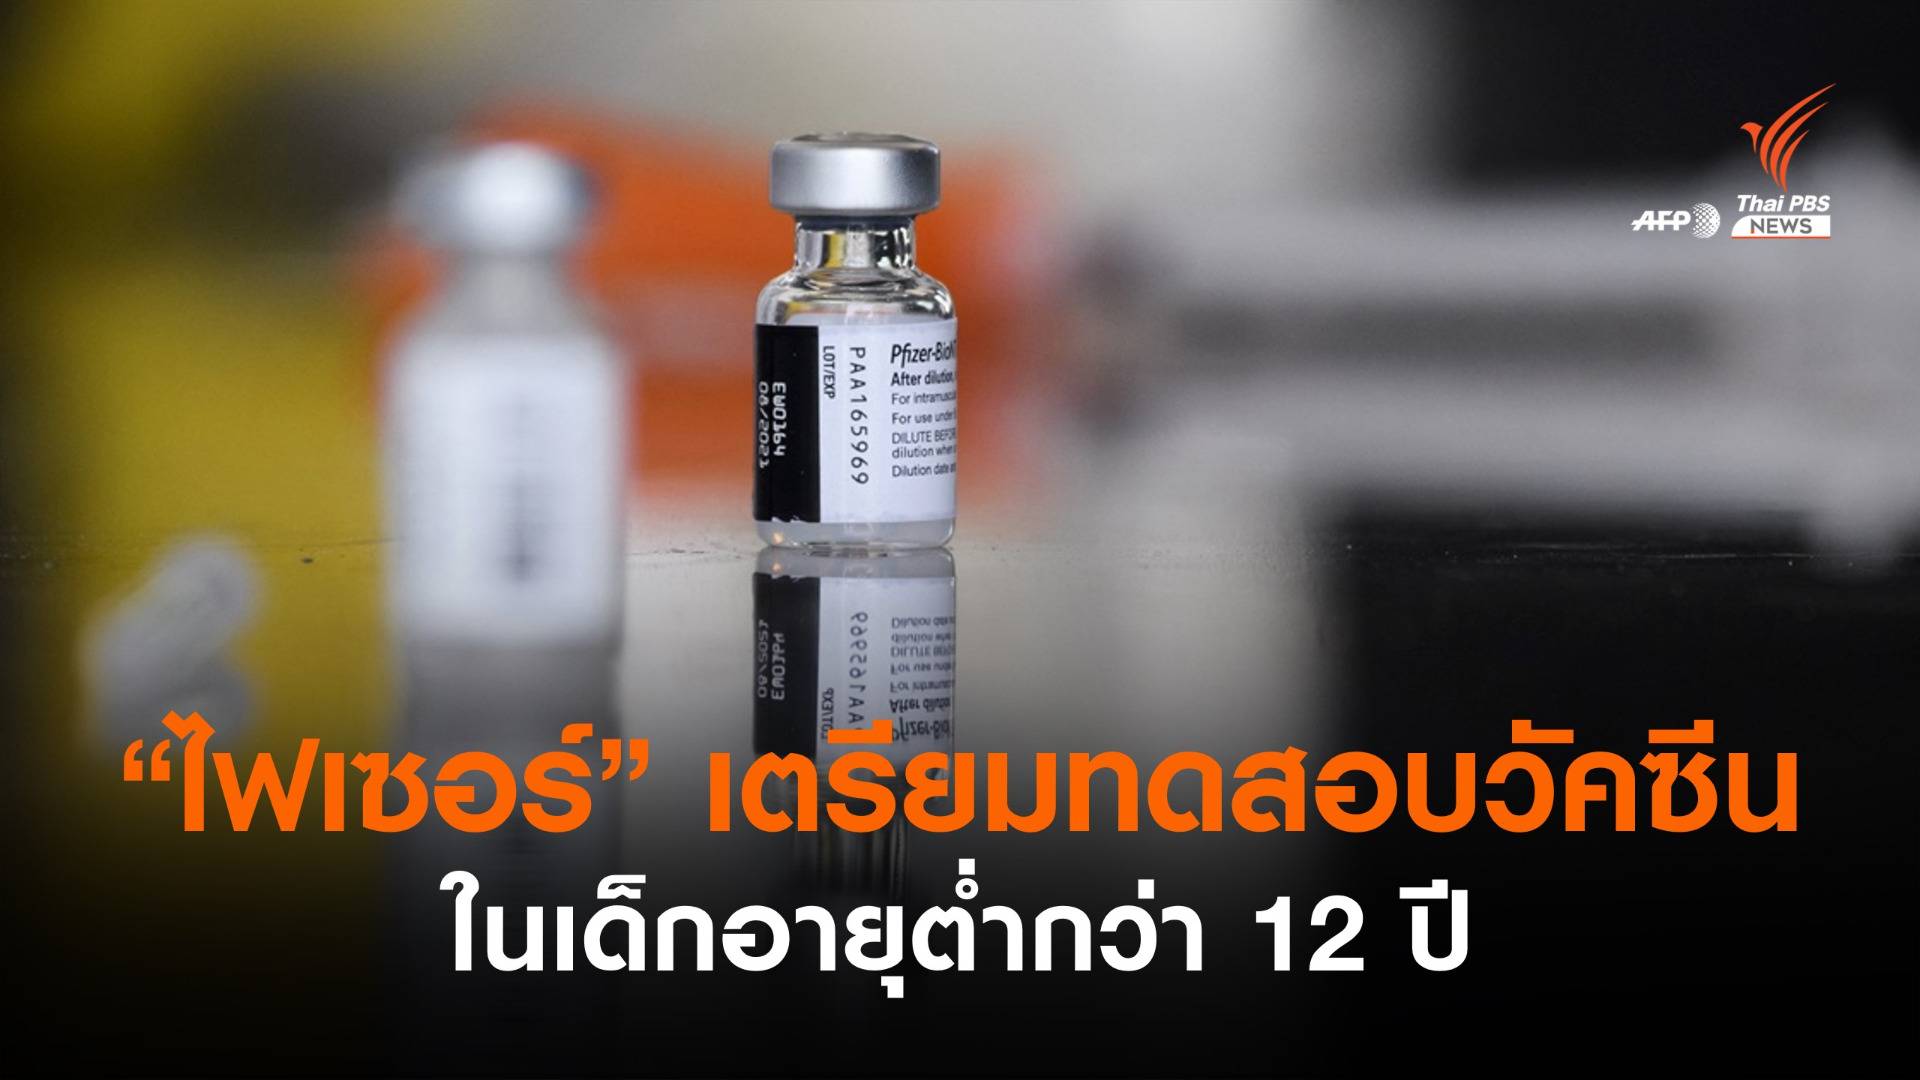 “ไฟเซอร์” เตรียมทดสอบวัคซีนโควิด-19 ในเด็กอายุต่ำกว่า 12 ปี